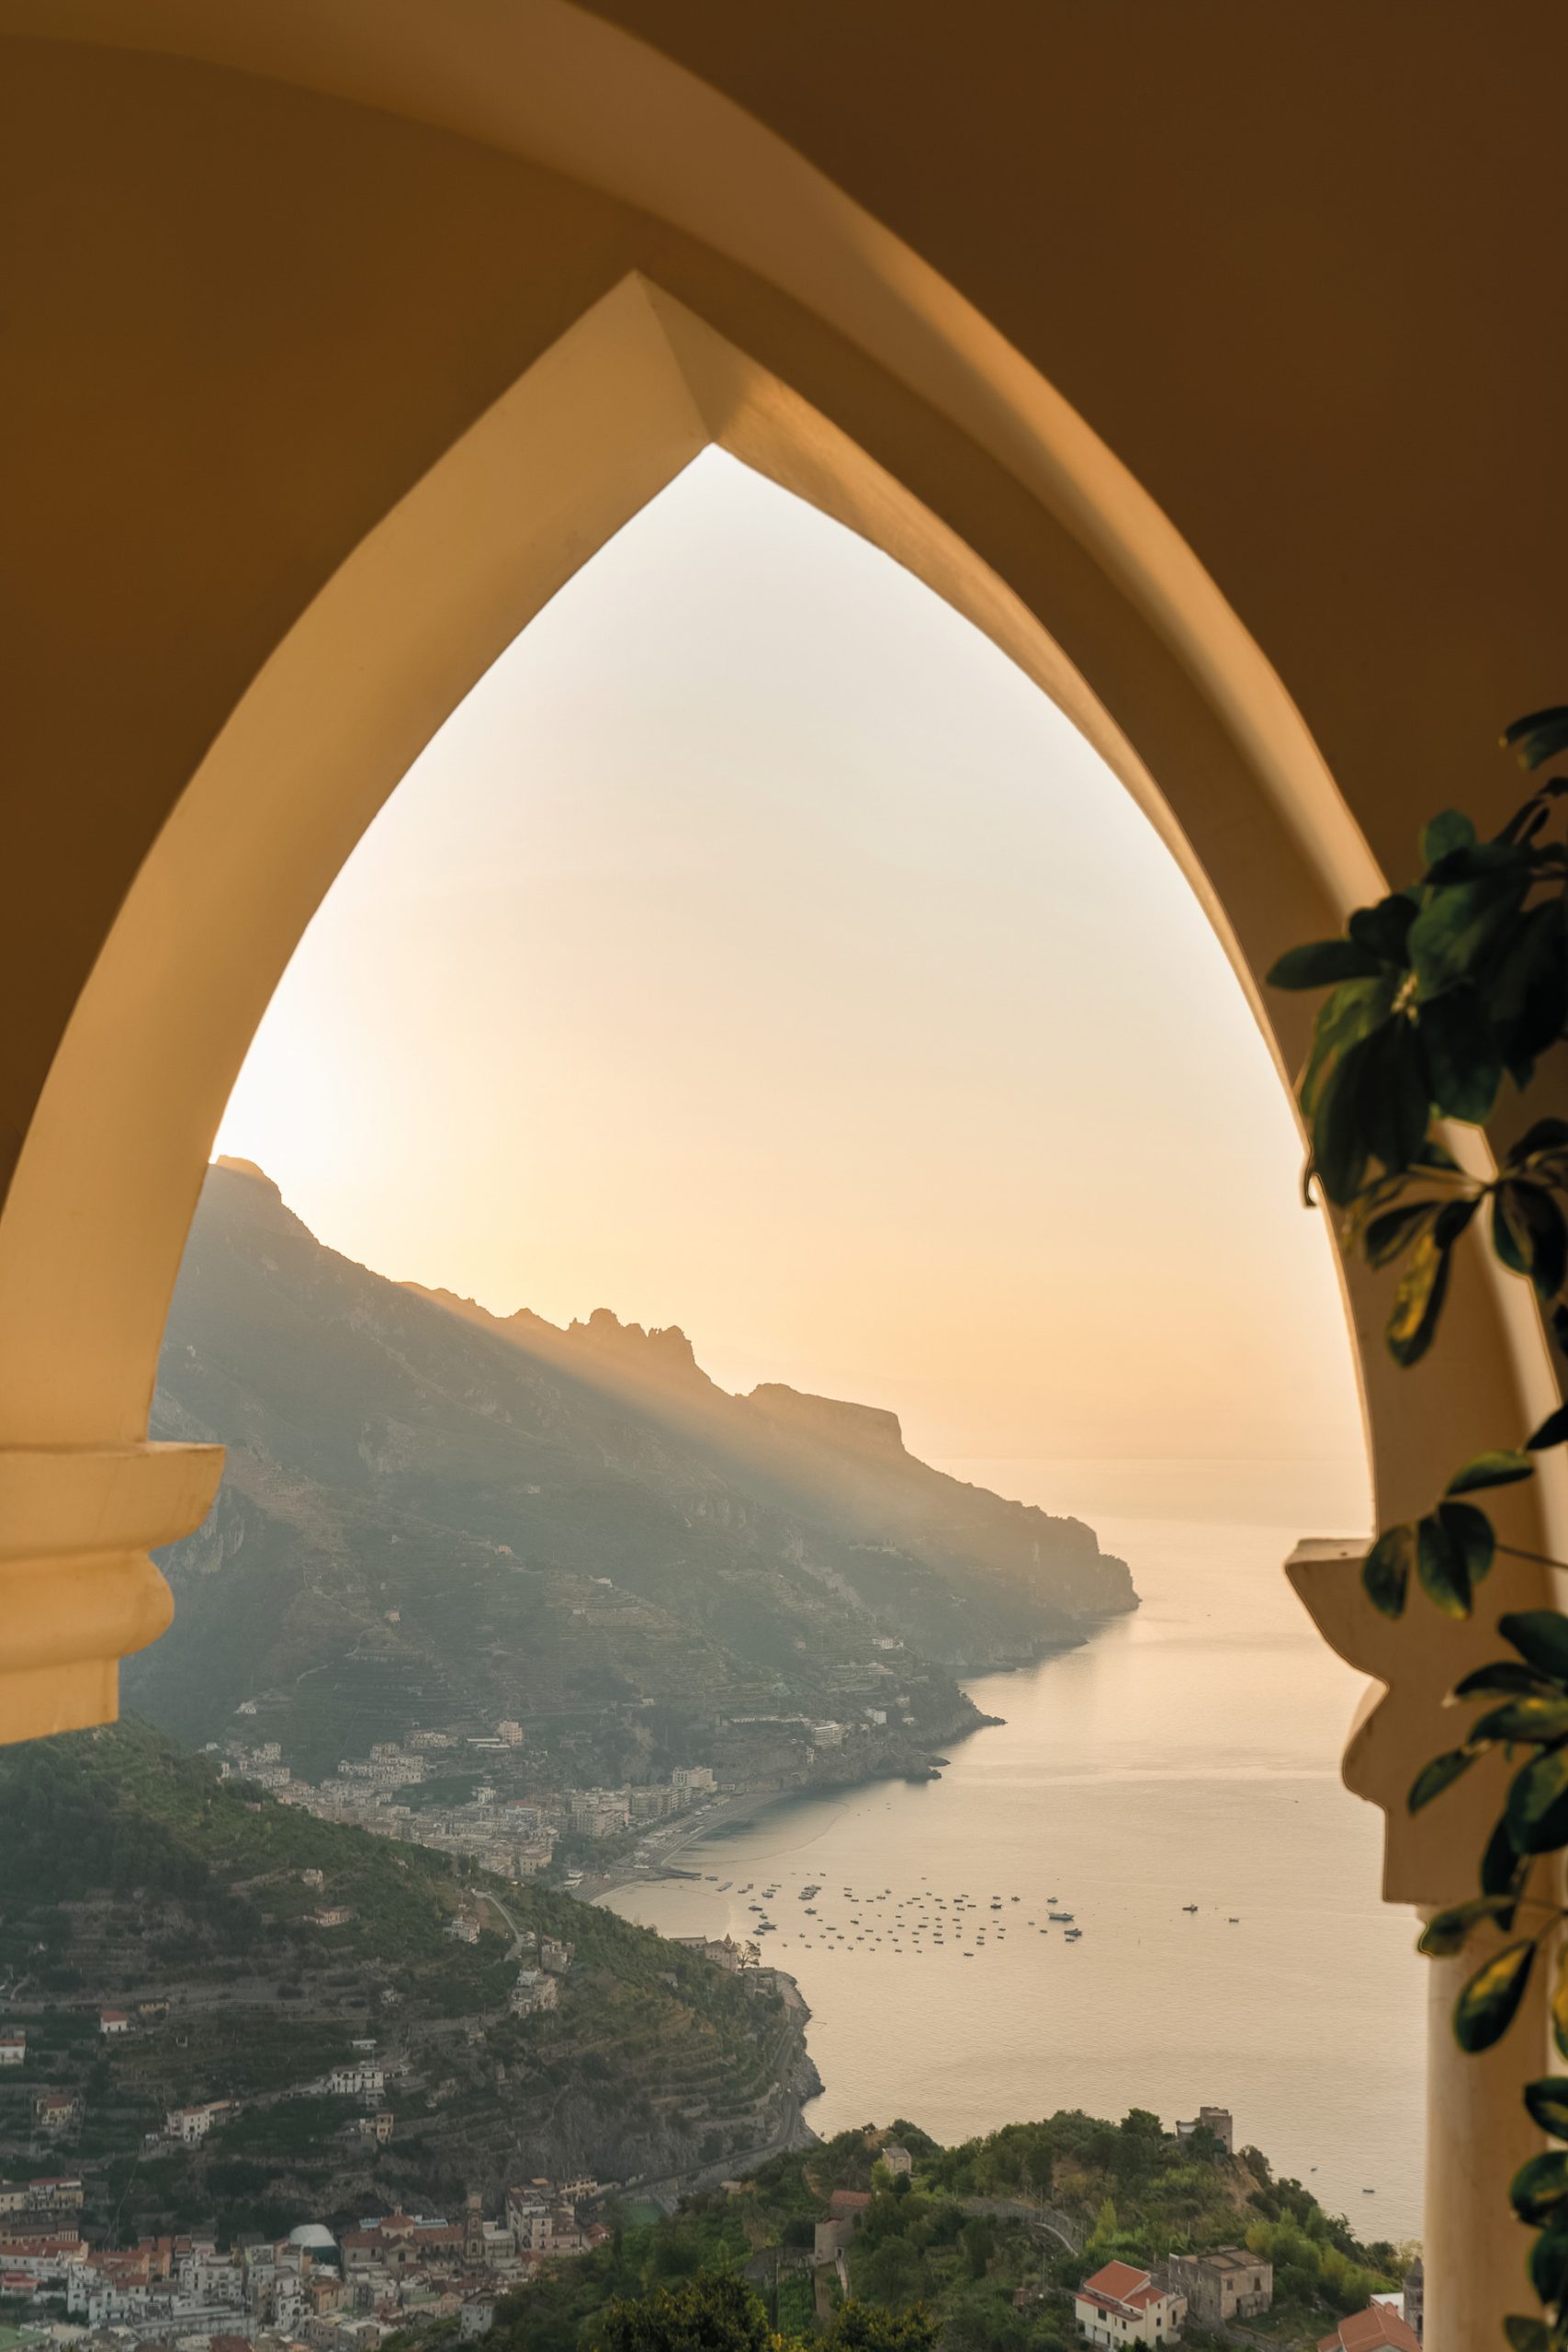 Caruso, A Belmond Hotel, Amalfi Coast – Ravello, Italy – Coastline Ocean View